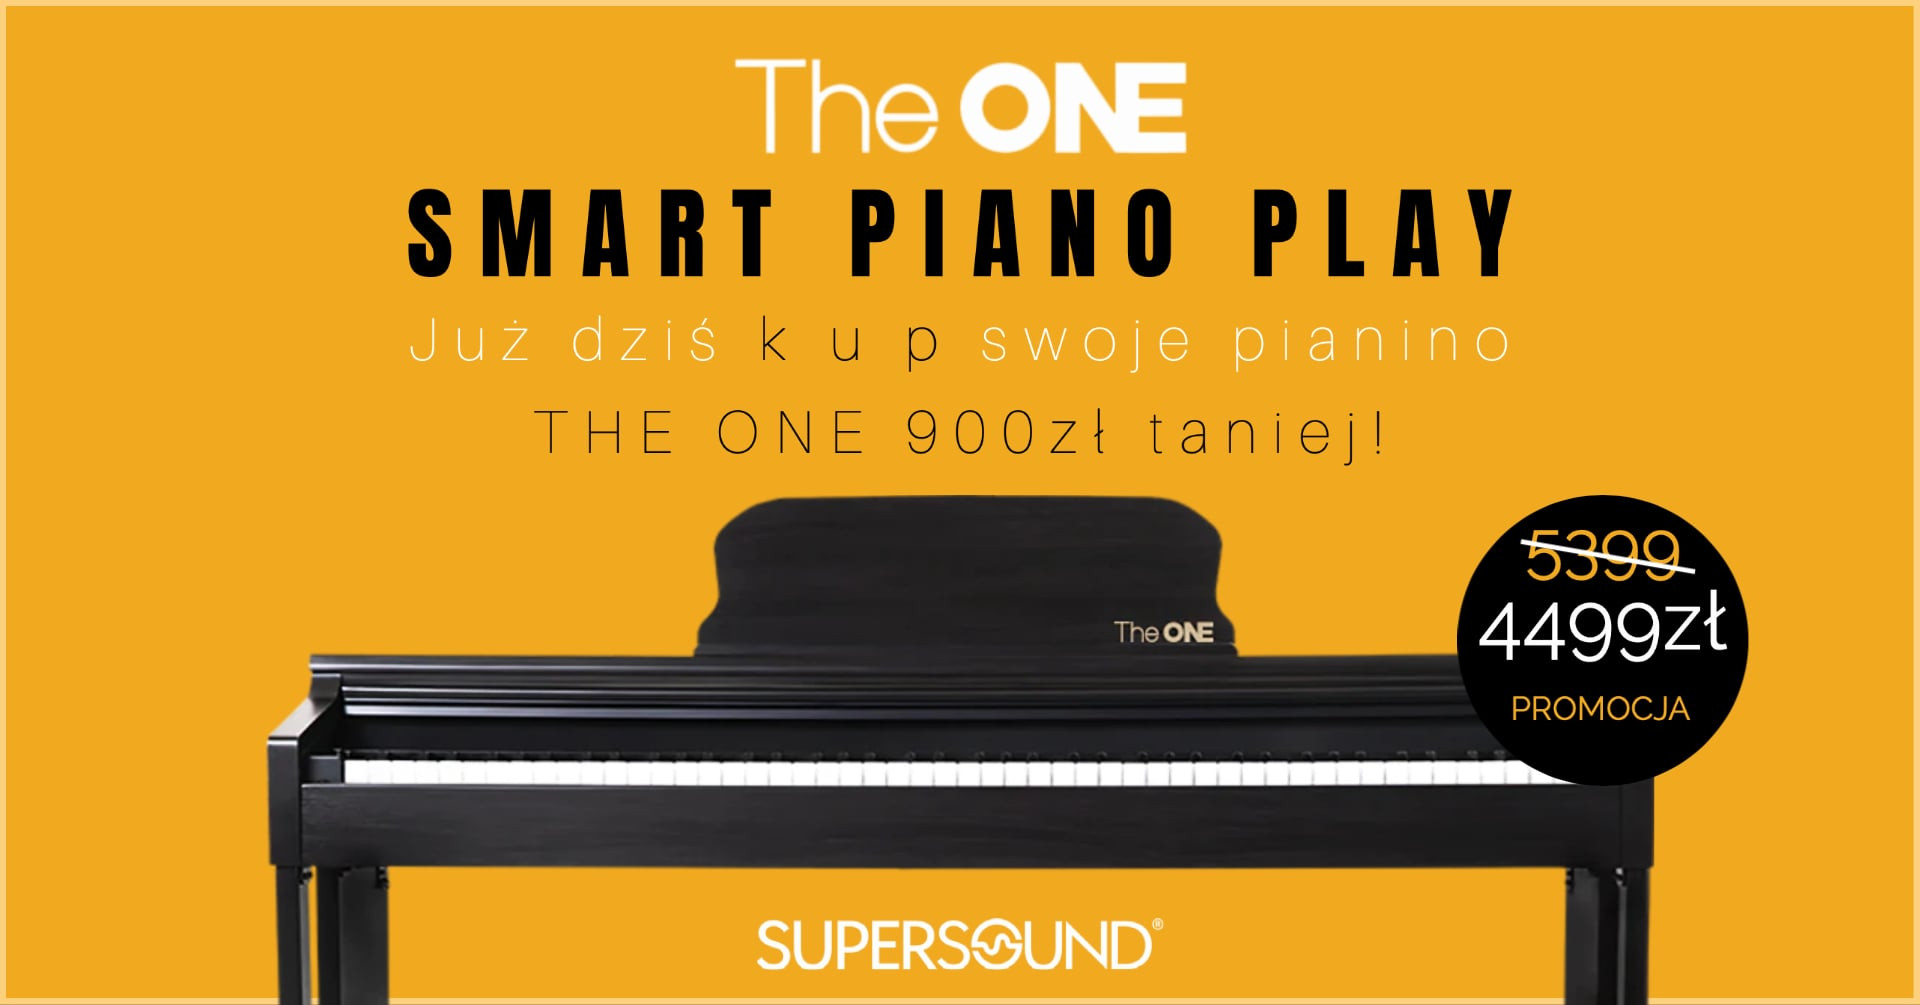 PROMOCJA: The ONE Smart Piano PLAY teraz 900zł taniej!